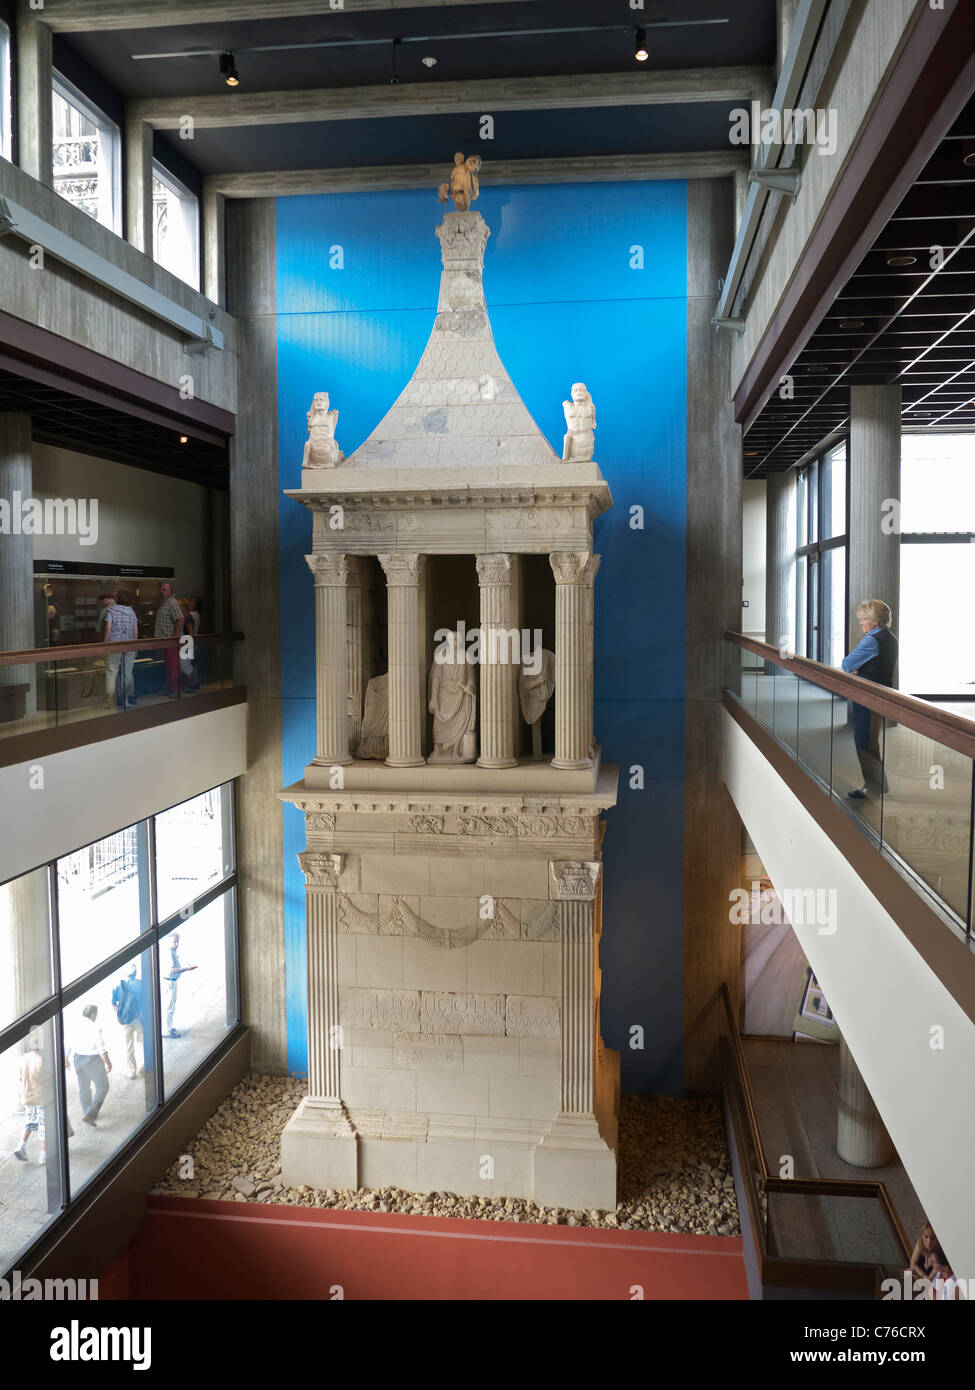 Le sépulcre de Poblicius au musée romain-germanique de Cologne Allemagne Banque D'Images